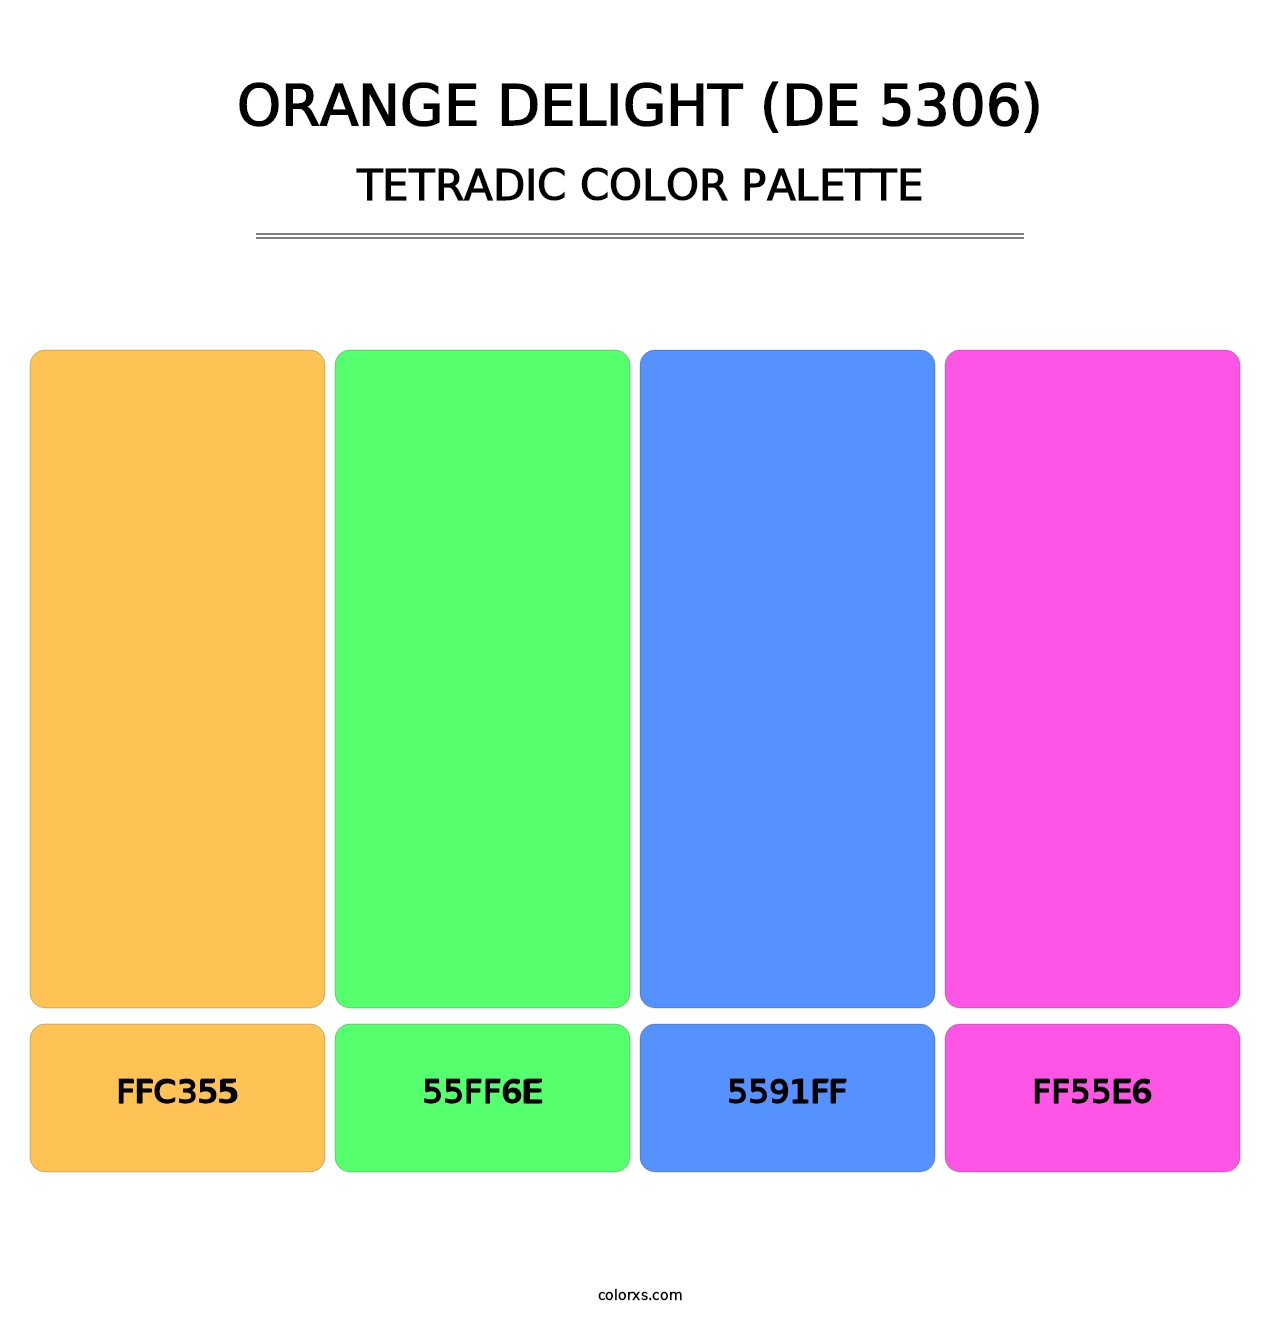 Orange Delight (DE 5306) - Tetradic Color Palette